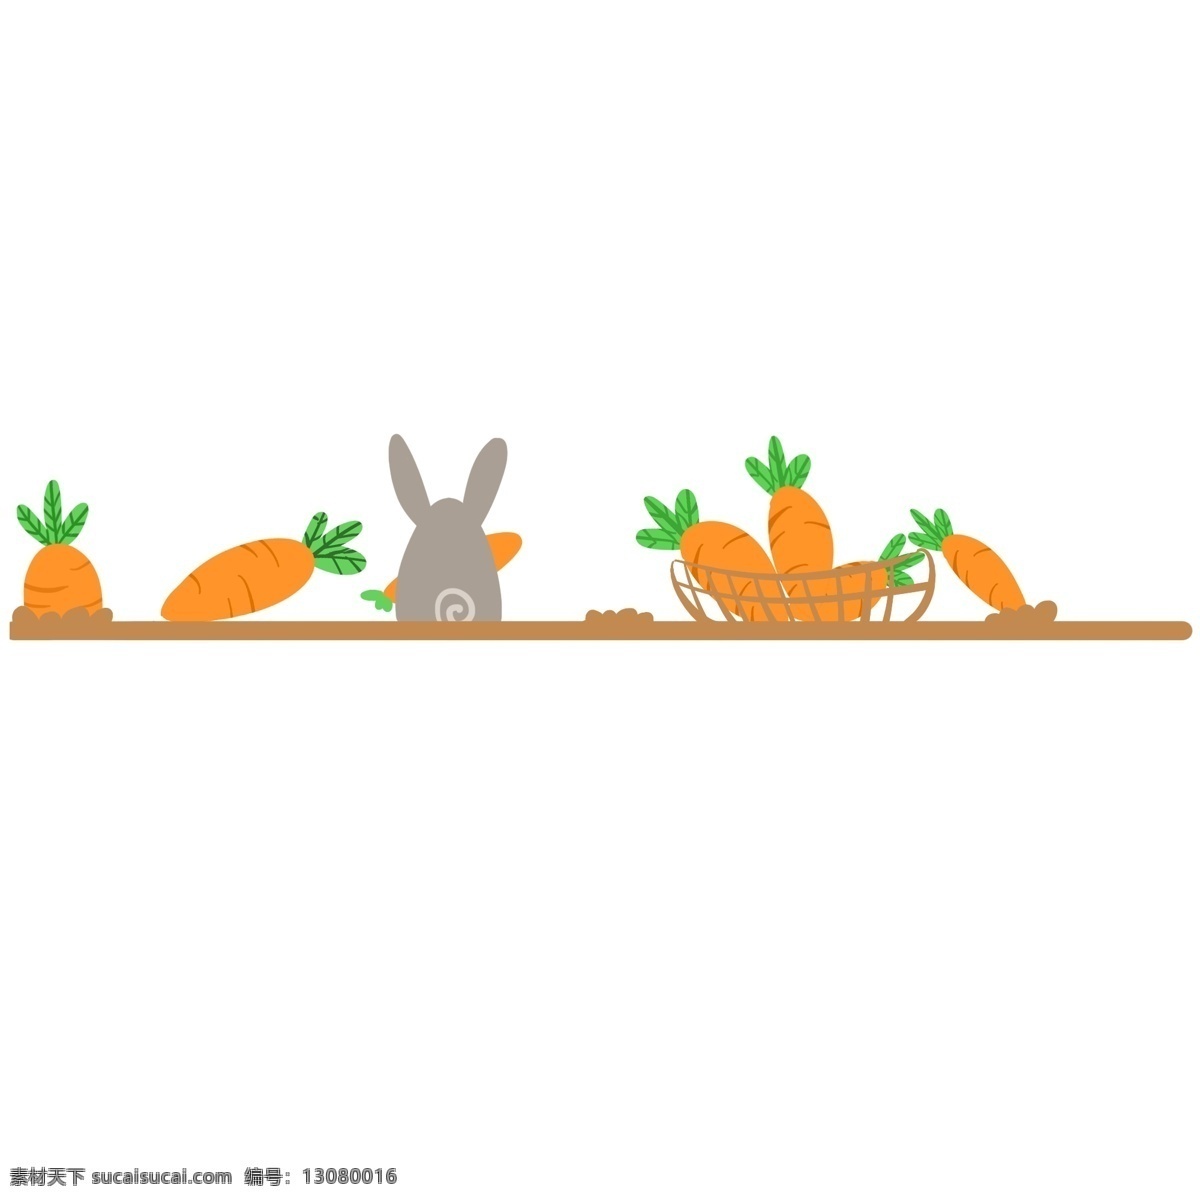 黄色 胡萝卜 分割线 蔬菜分割线 绿叶分割线 分割线插画 胡萝卜分割线 灰色小兔子 兔子分割线